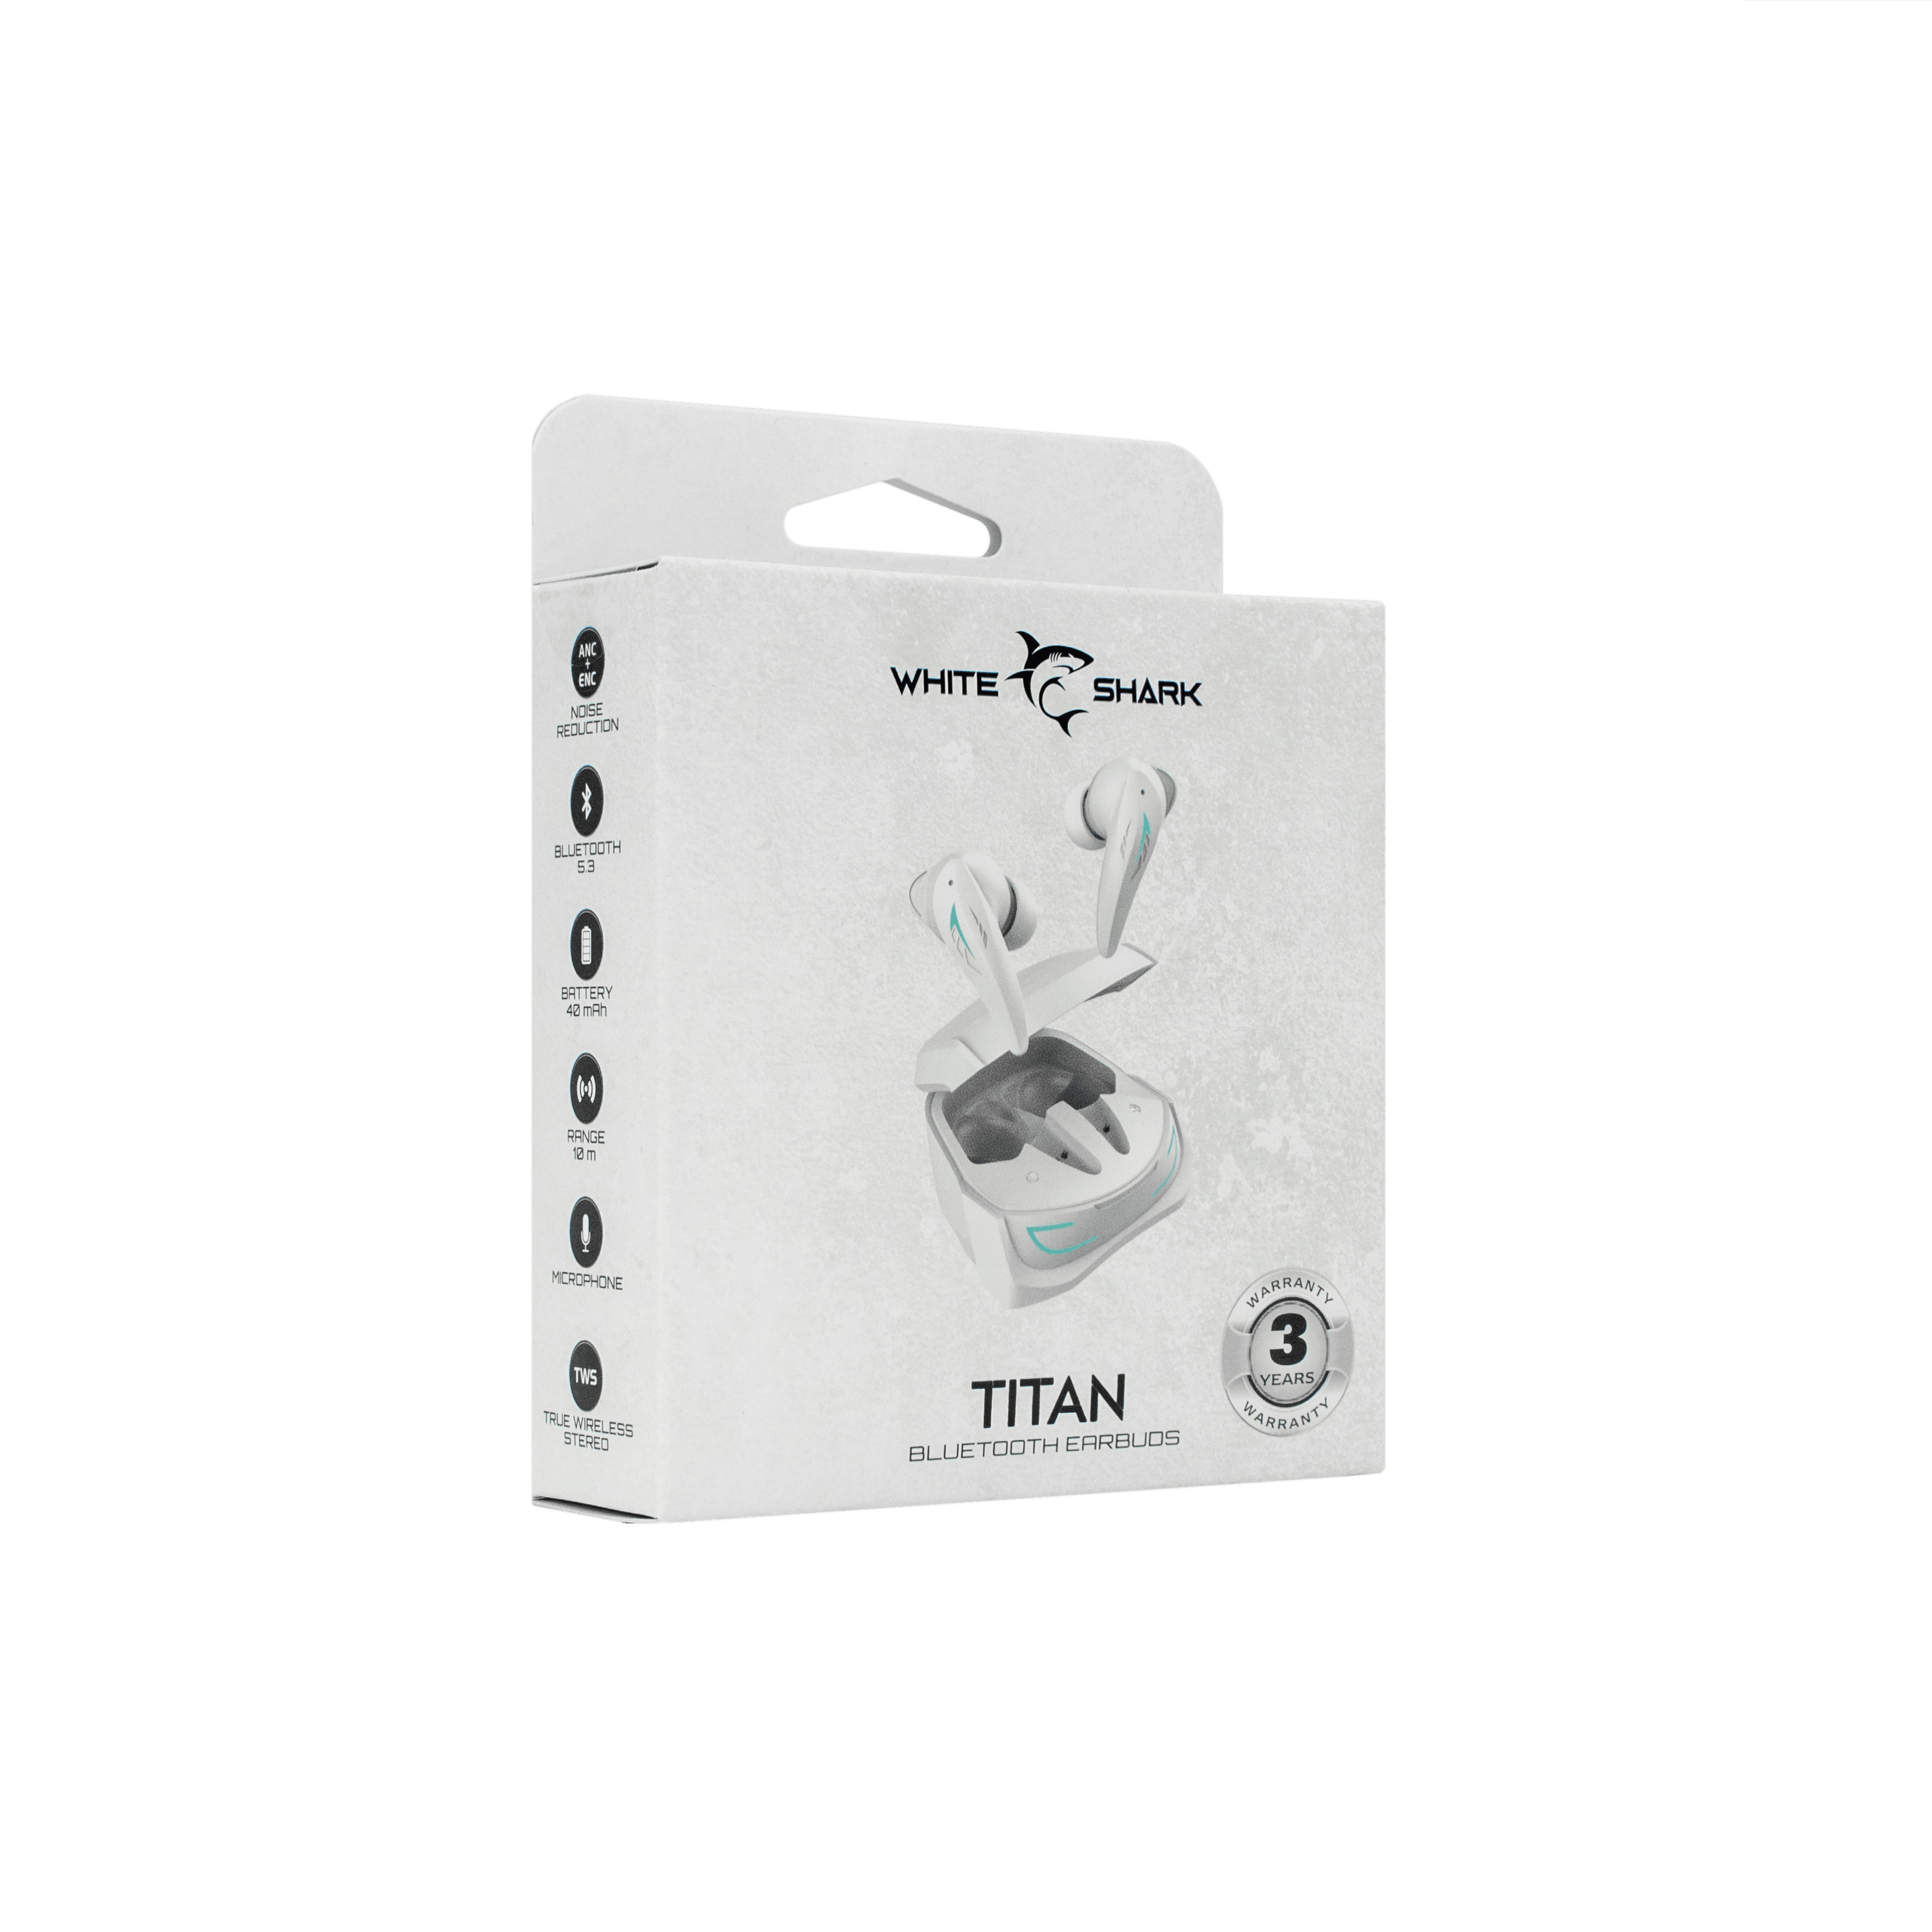 White Shark TITAN Bluetooth Earbuds (White) - GameStore.mt | Powered by Flutisat